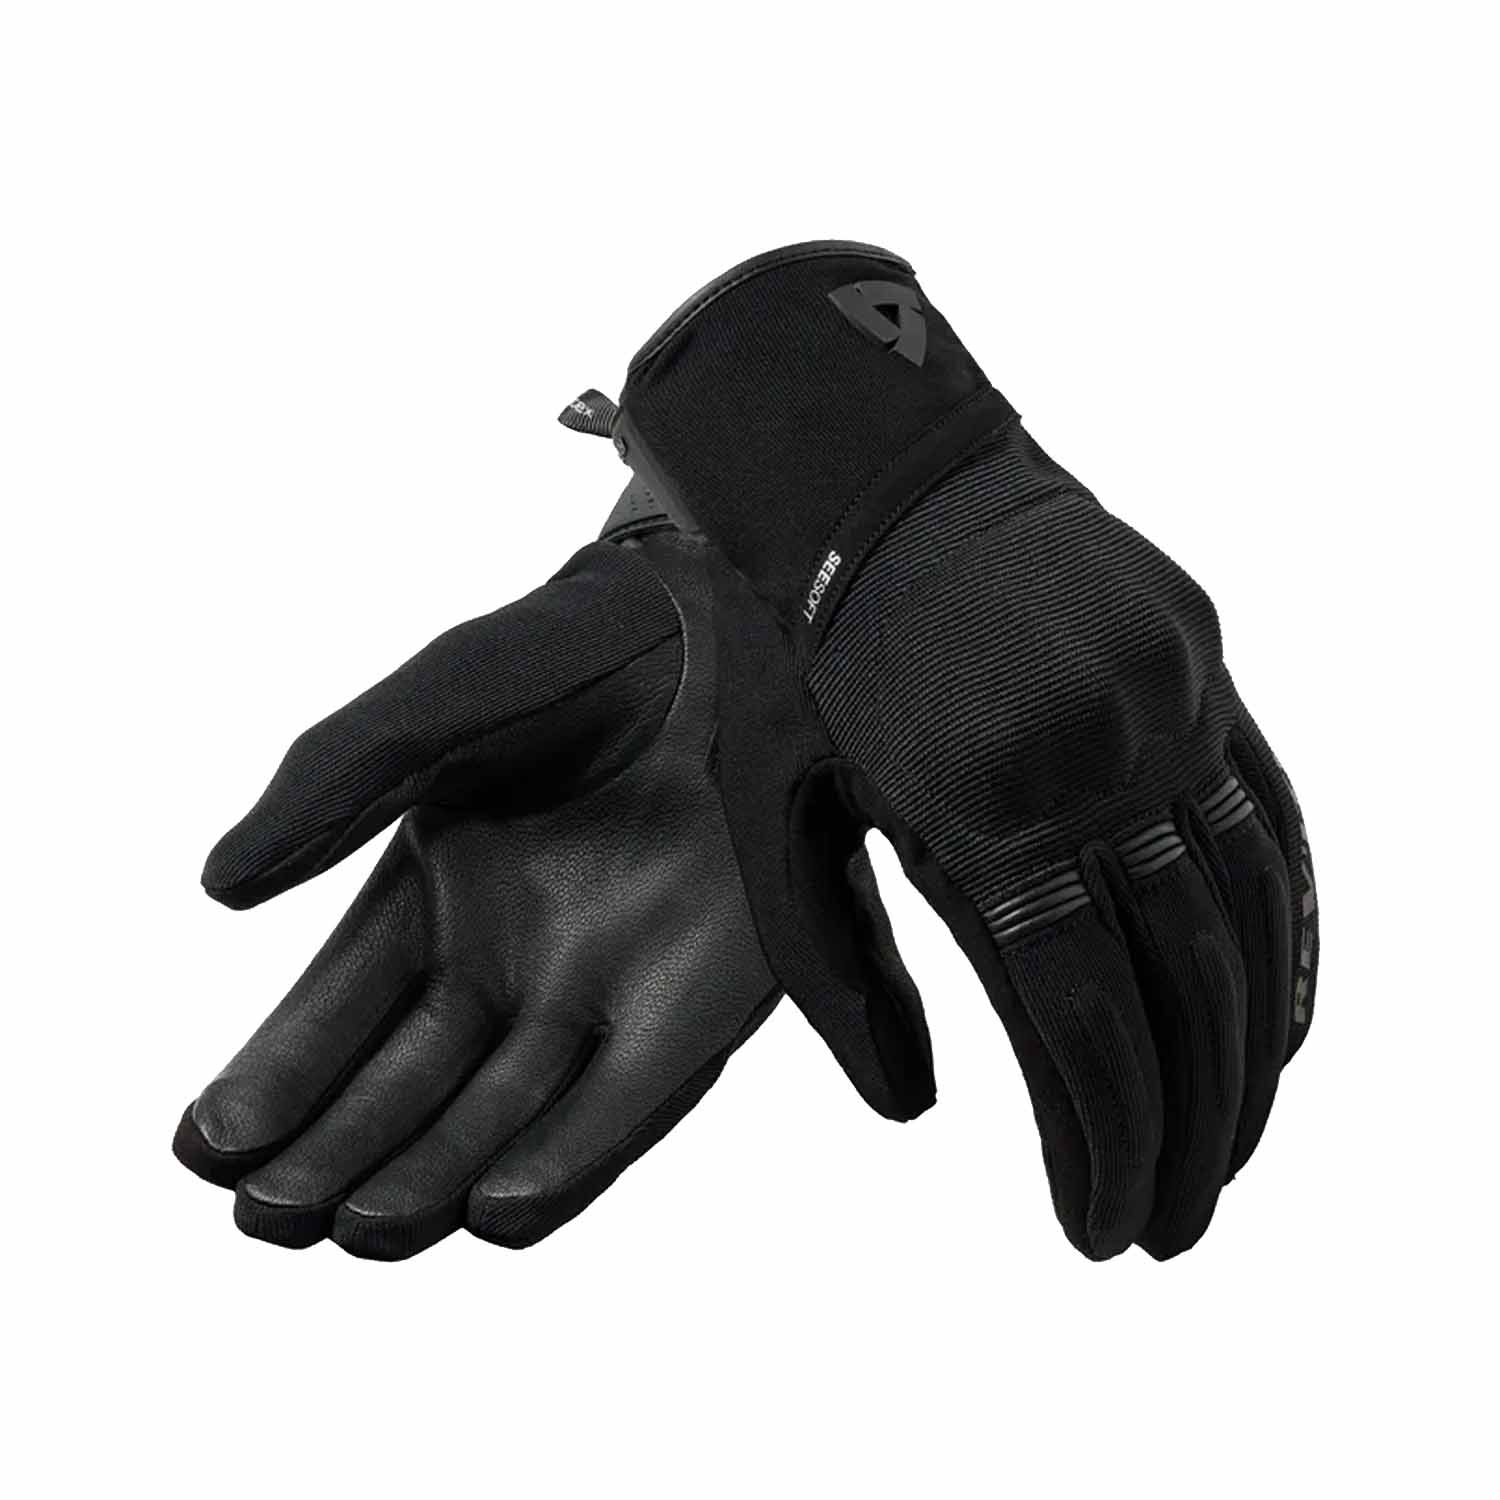 Image of REV'IT! Mosca 2 H2O Gloves Ladies Black Size L EN